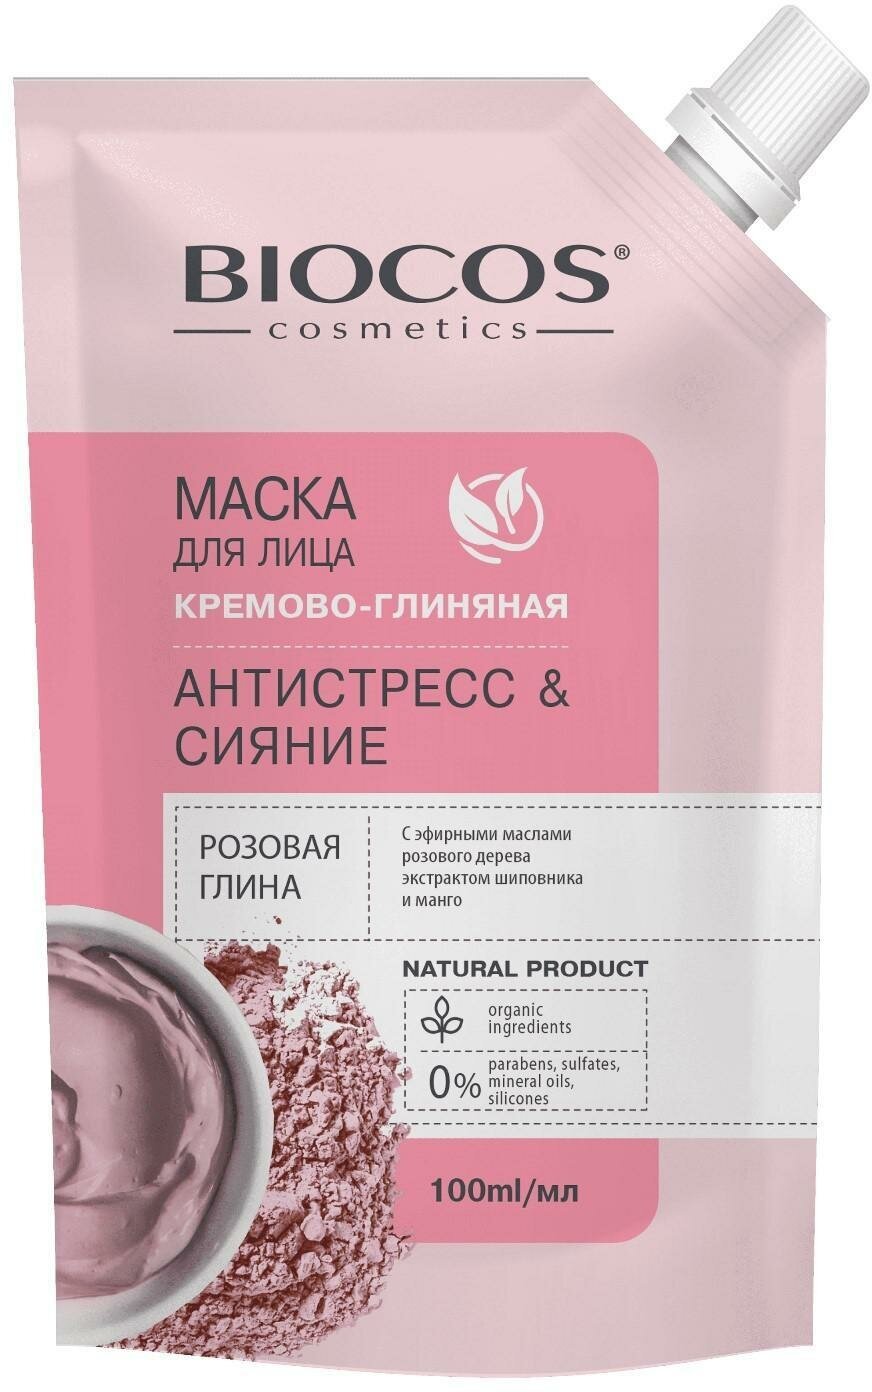 Маска для лица BioCos на основе розовой глины, антистресс и сияние в дойпаке, 100 мл